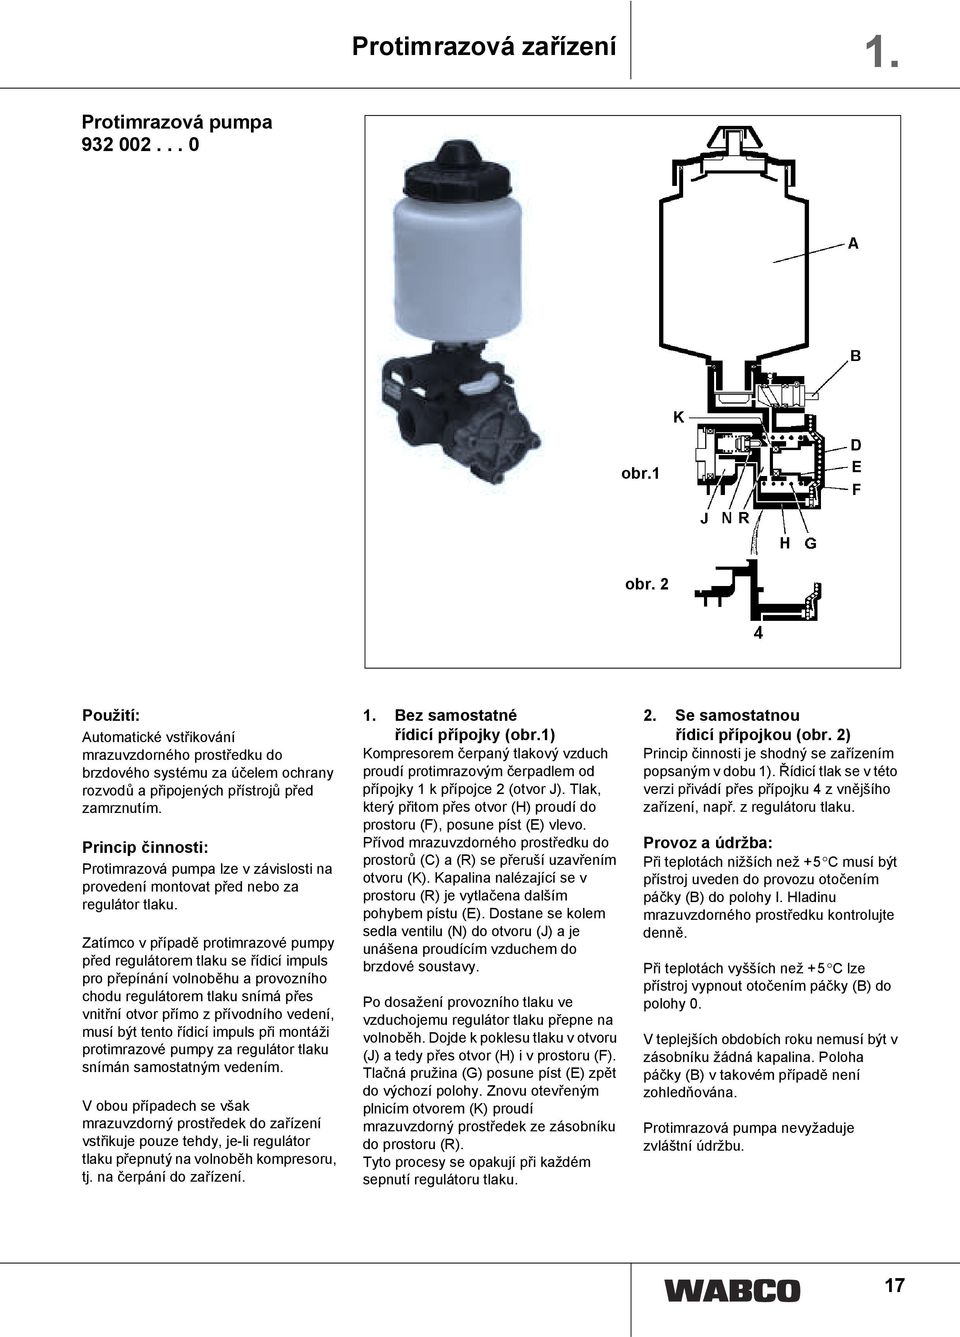 Protimrazová pumpa lze v závislosti na provedení montovat před nebo za regulátor tlaku.